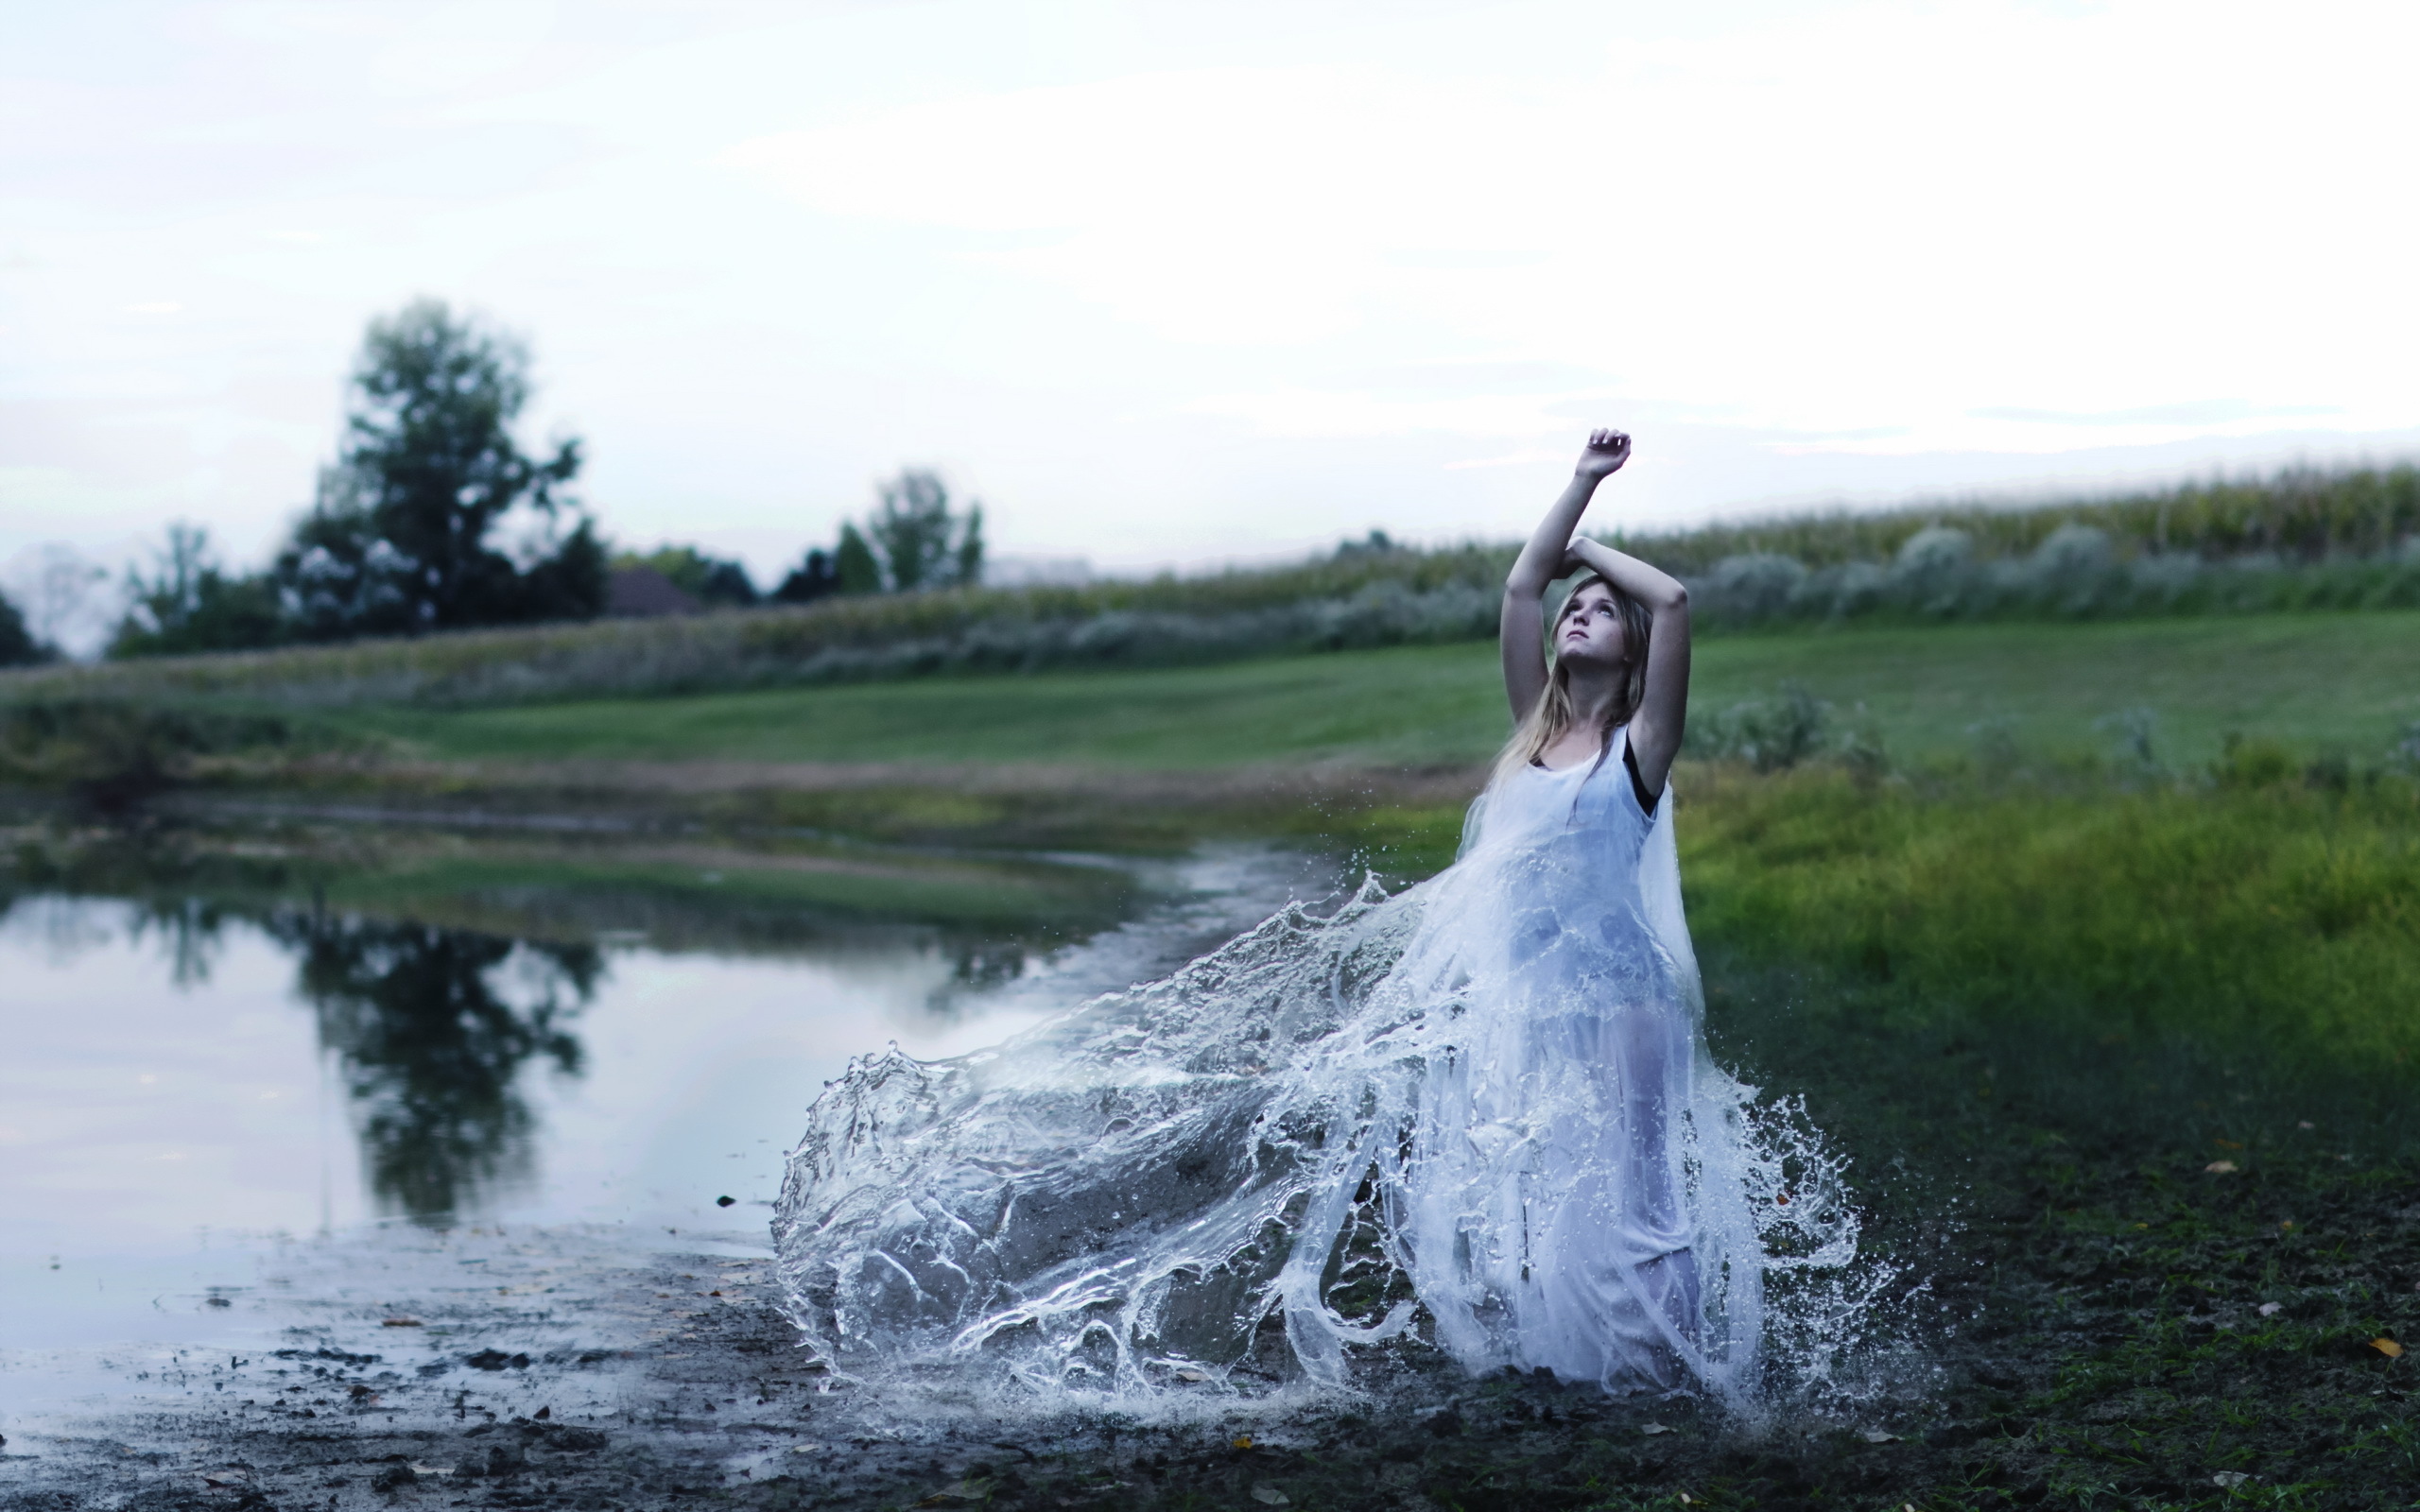 Слушать дай воды. Фотосессия в воде. Девушка в брызгах воды. Девушка в платье из воды. Девушка у реки.